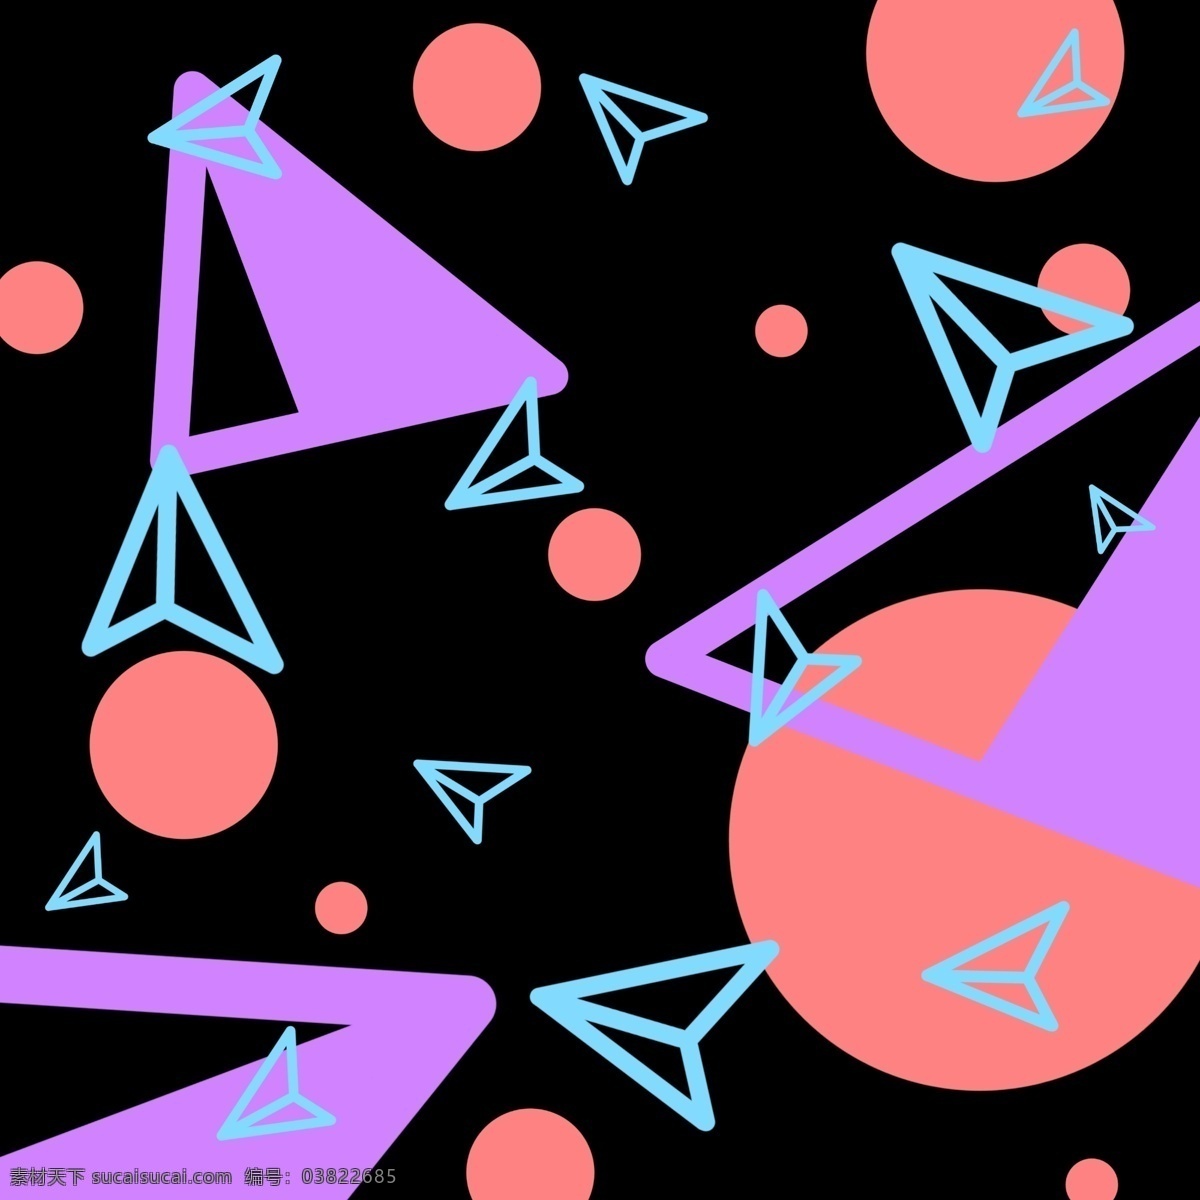 创意 孟菲斯 波普 底纹 创意底纹 紫色 三角形 孟菲斯底纹 波普底纹 不规则图形 底纹装饰 几何图形